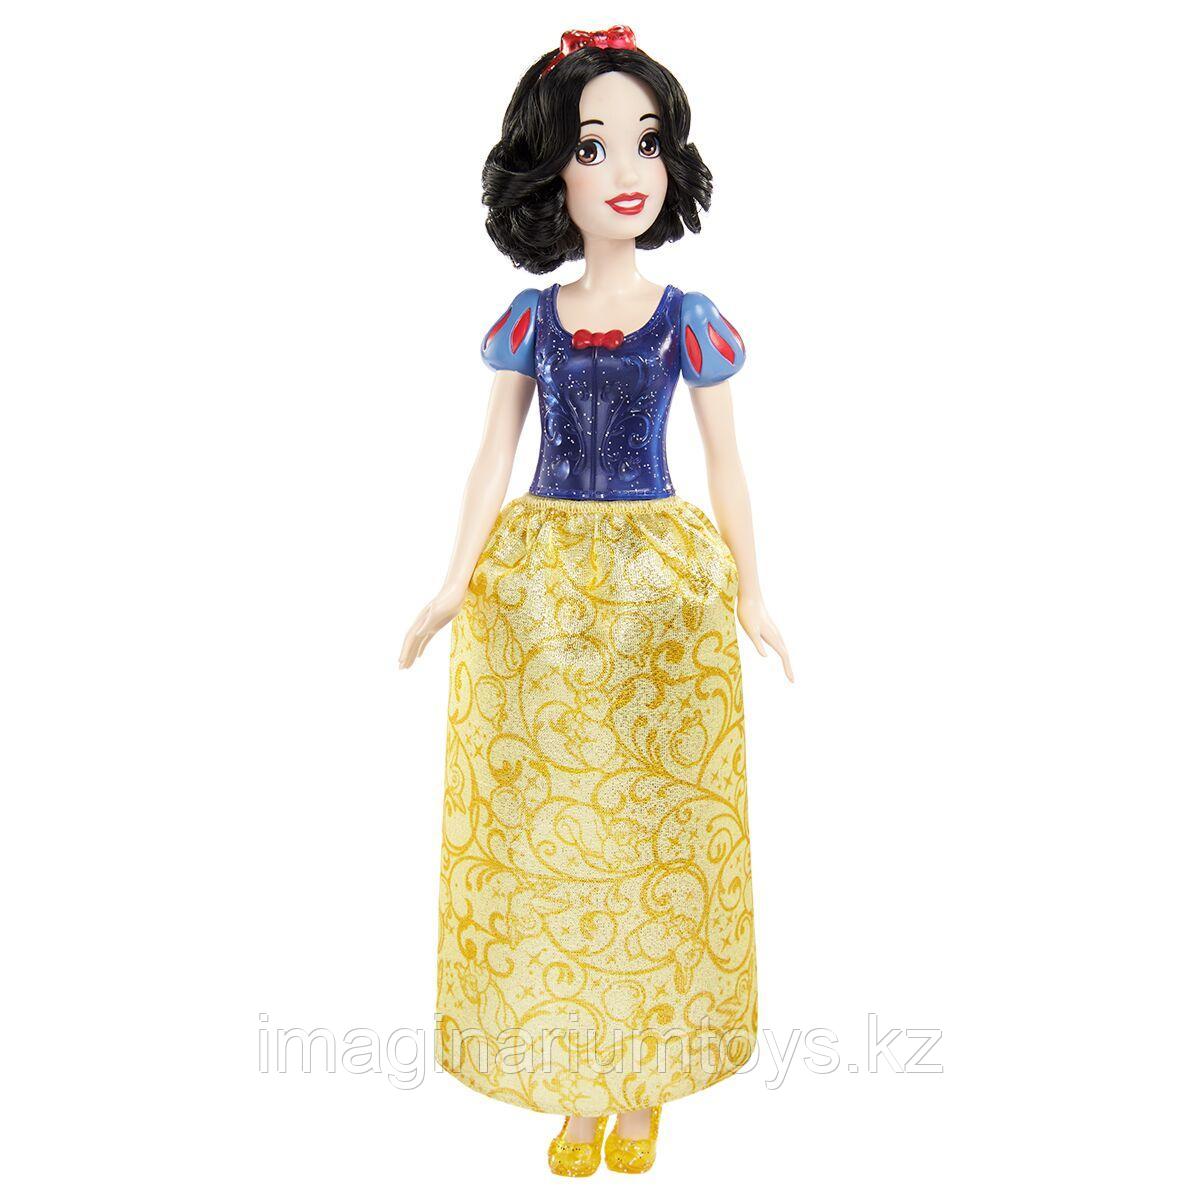 Кукла принцесса Белоснежка Дисней Mattel